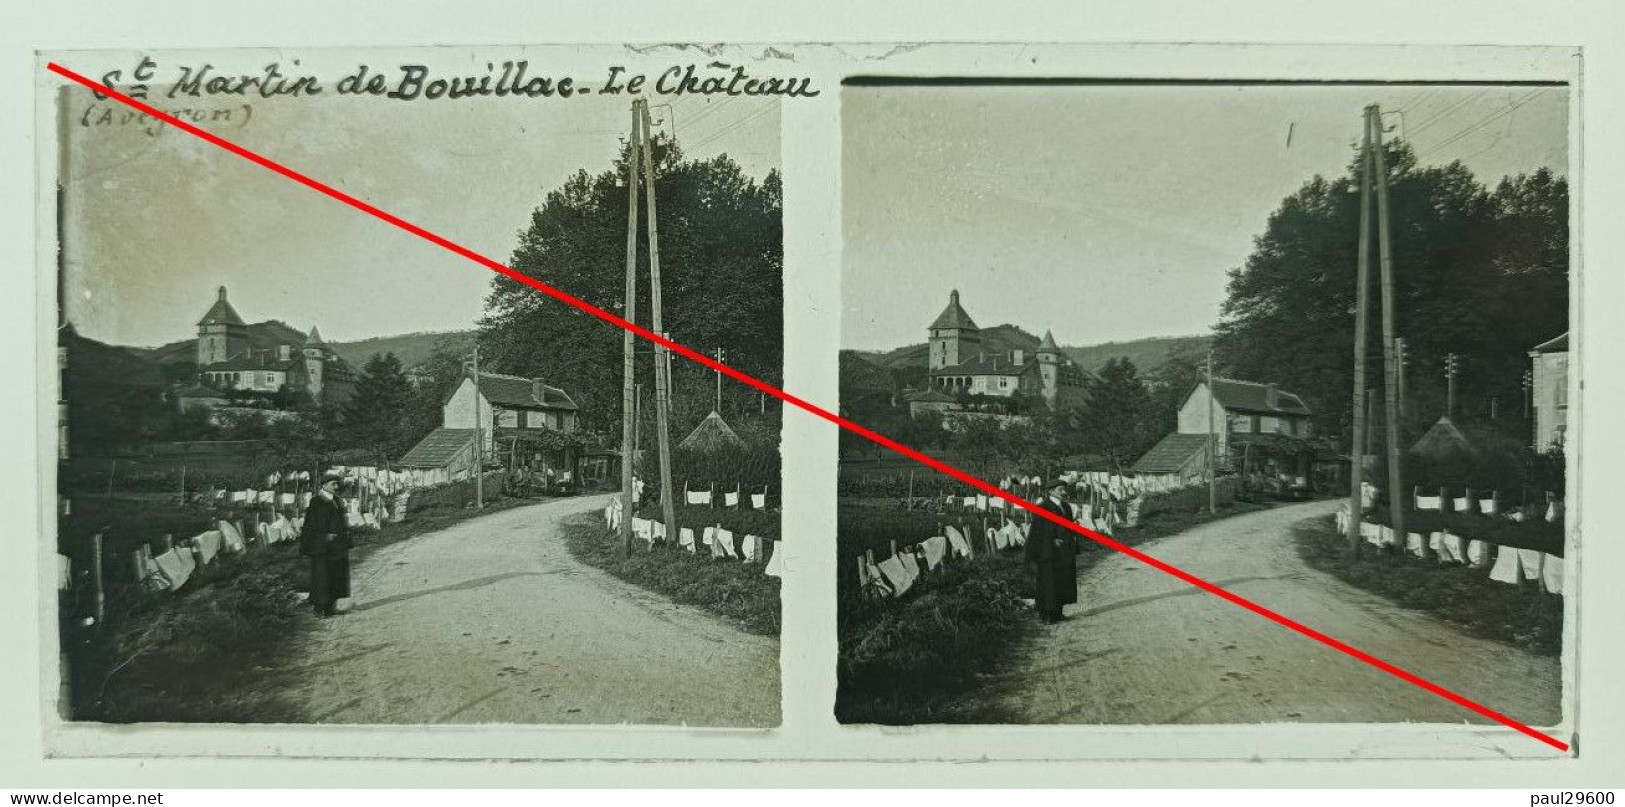 Photo Sur Plaque De Verre, Aveyron, Saint Martin De Bouillac, Le Château, Rue, Maison, Linge, Homme, Champs, Années 1930 - Diapositiva Su Vetro